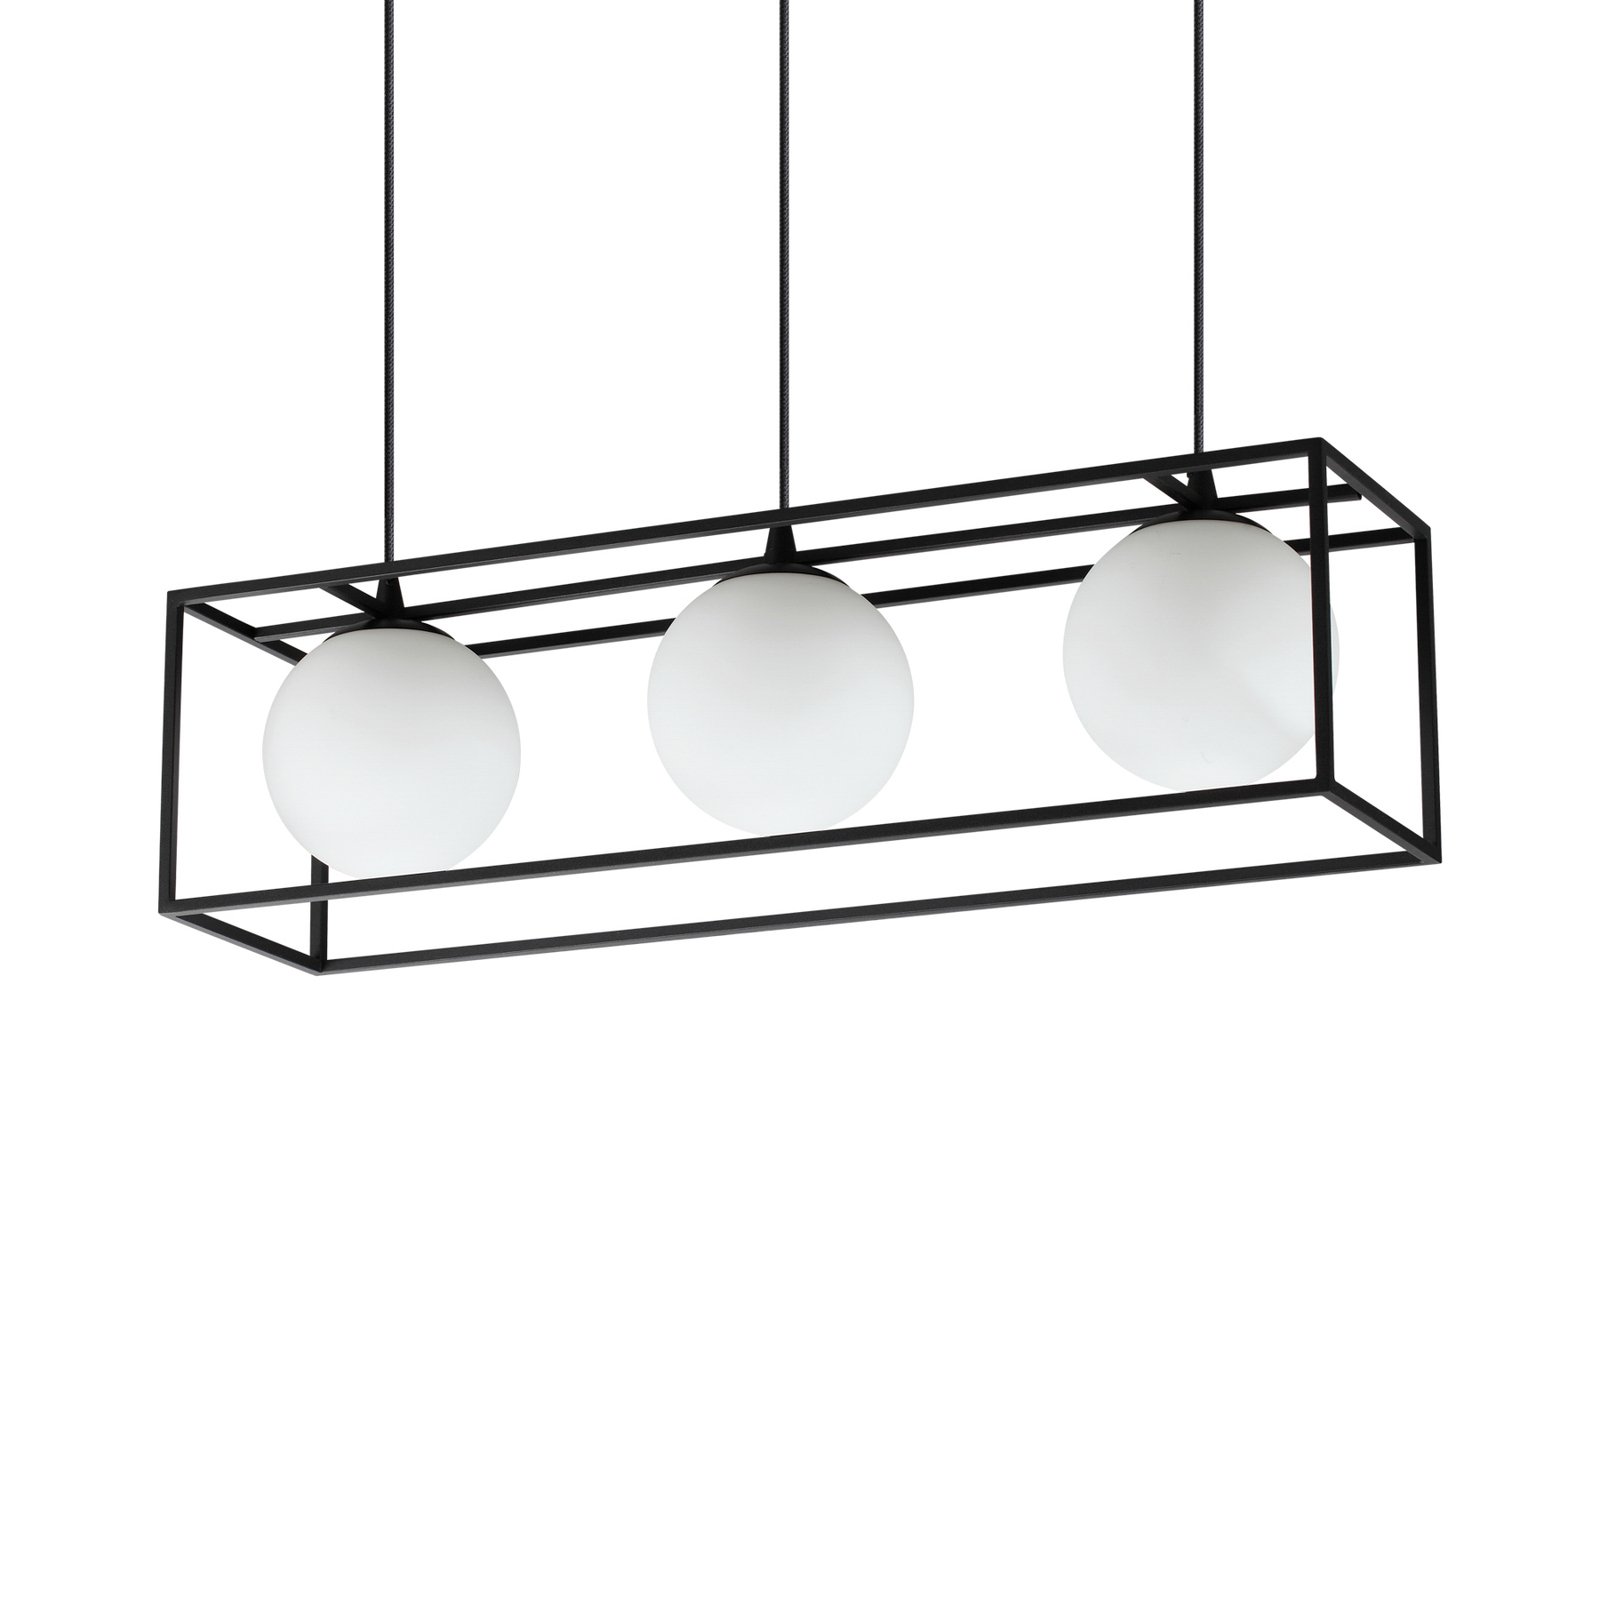 Ideal Lux viseča svetilka Lingotto, 3-svetlobna, ena kletka, črna